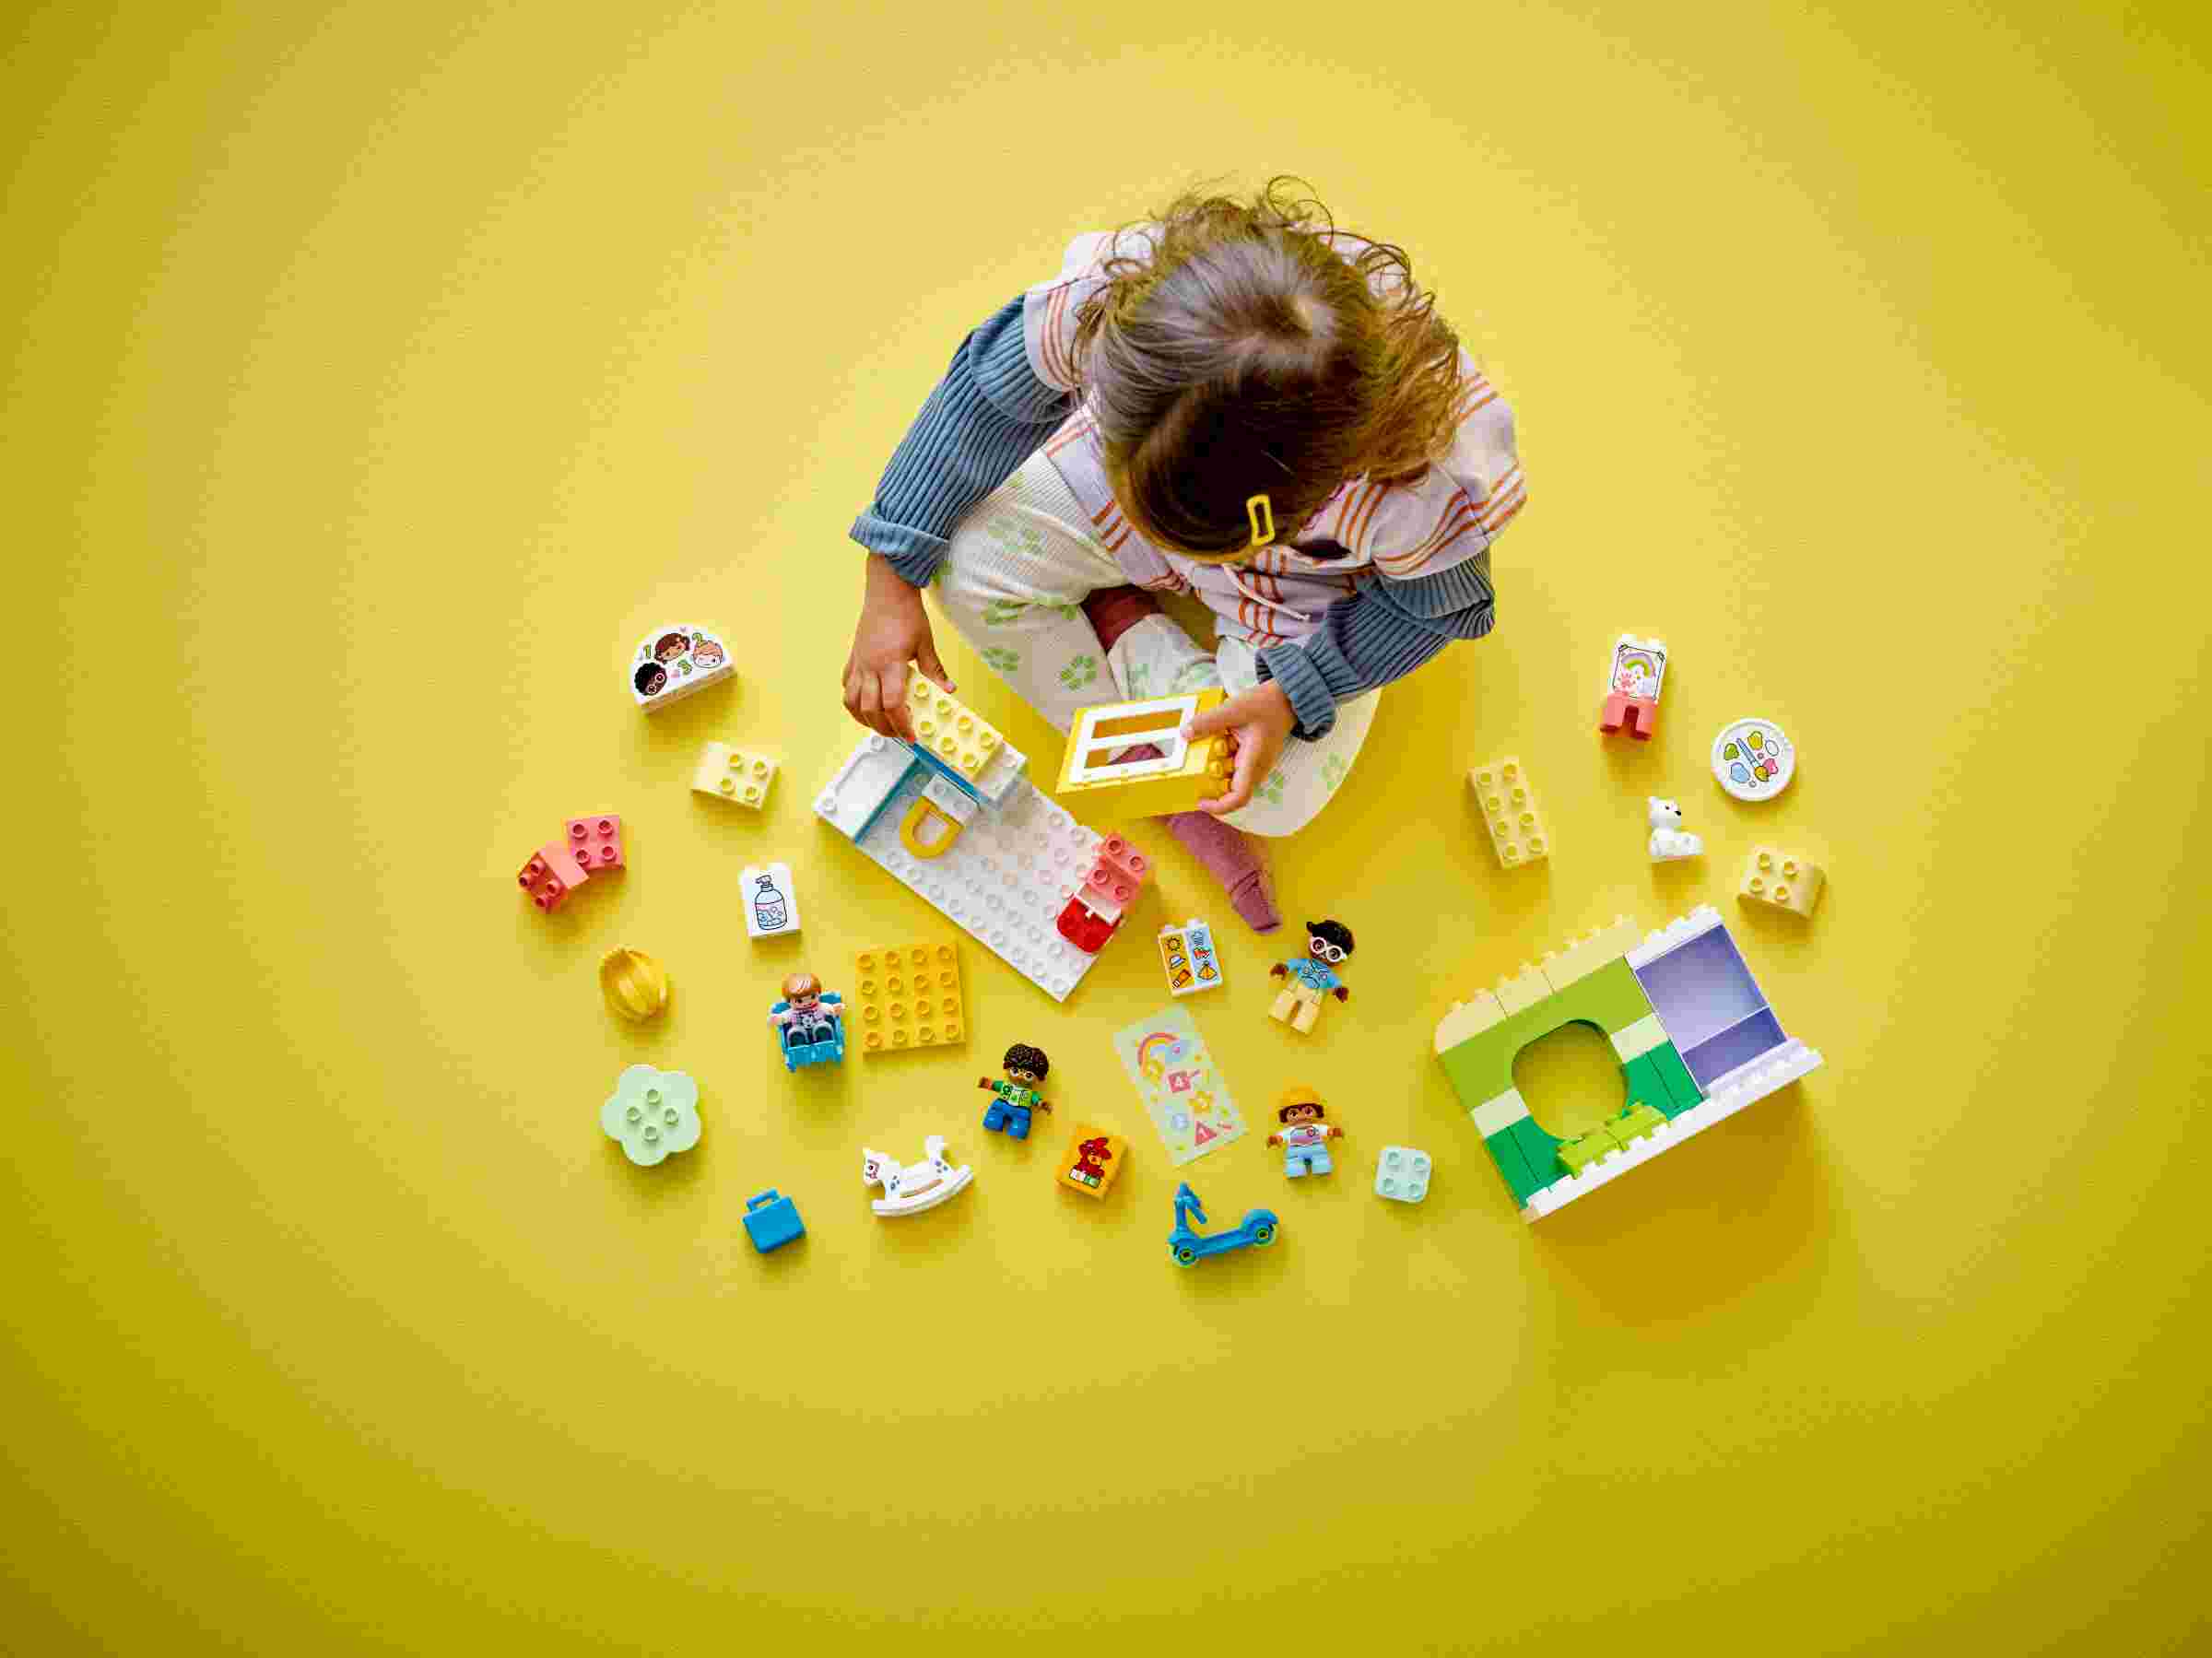 LEGO 10992 DUPLO Spielspaß in der Kita, Kunststation, 1 Erzieherin und 3 Kinder